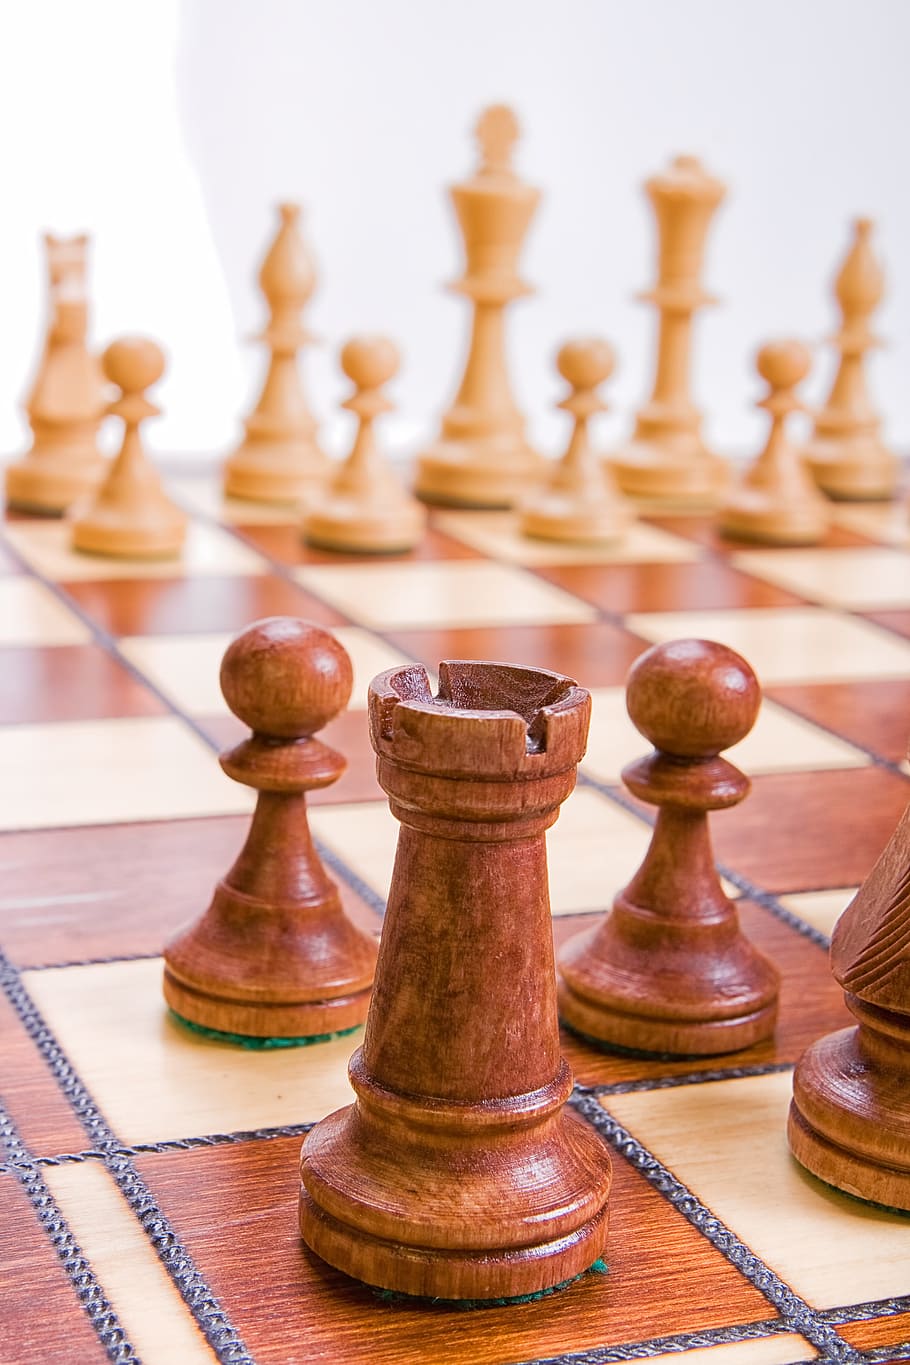 batalla, tablero, marrón, negocios, desafío, ajedrez, tablero de ajedrez, cerrar, competencia, decisión